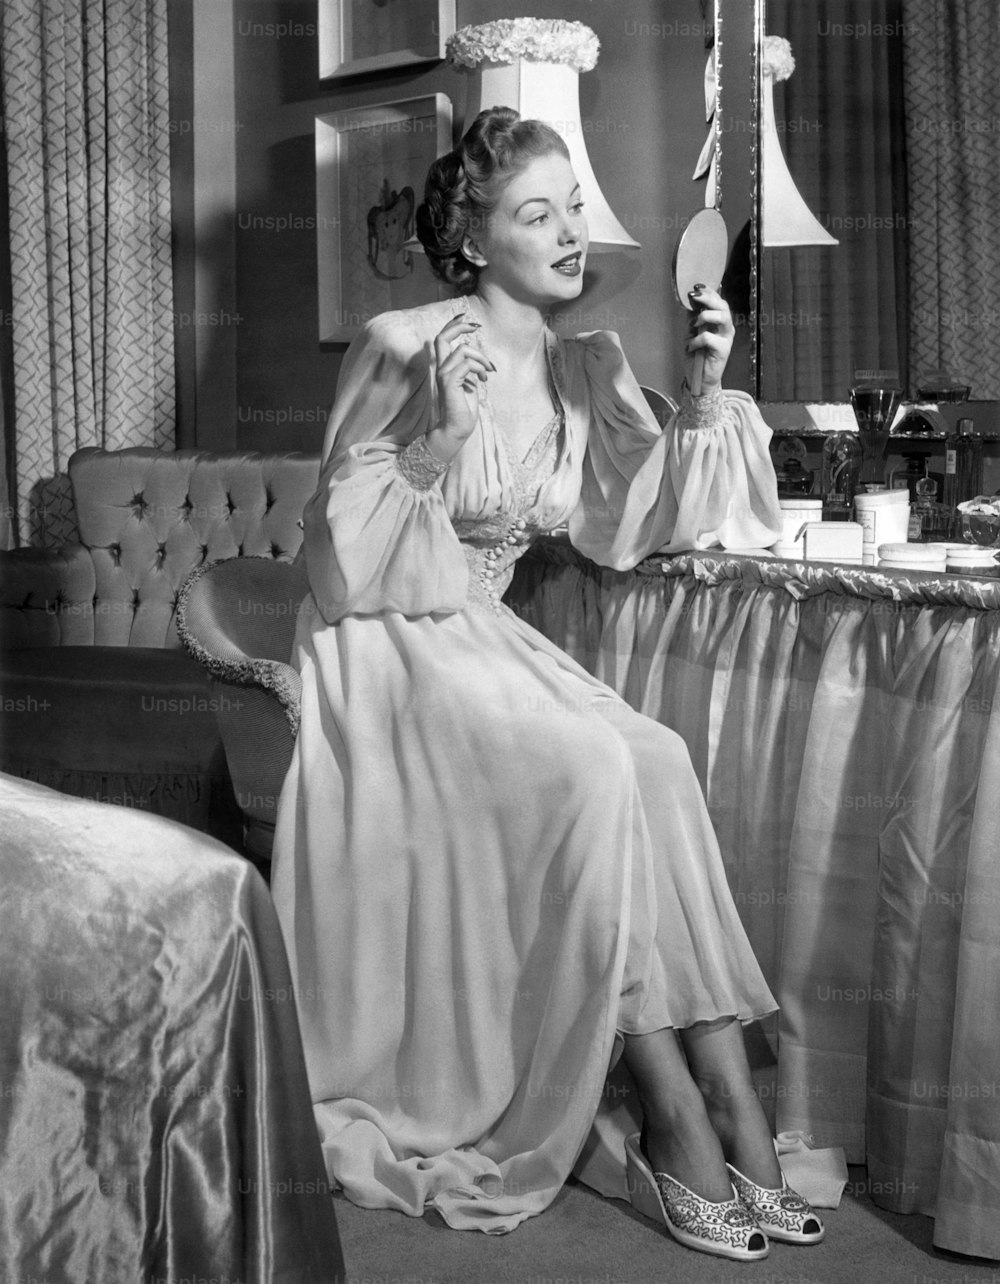 ÉTATS-UNIS - Vers les années 1950 : Une femme en chemise de nuit se regardant dans le miroir.